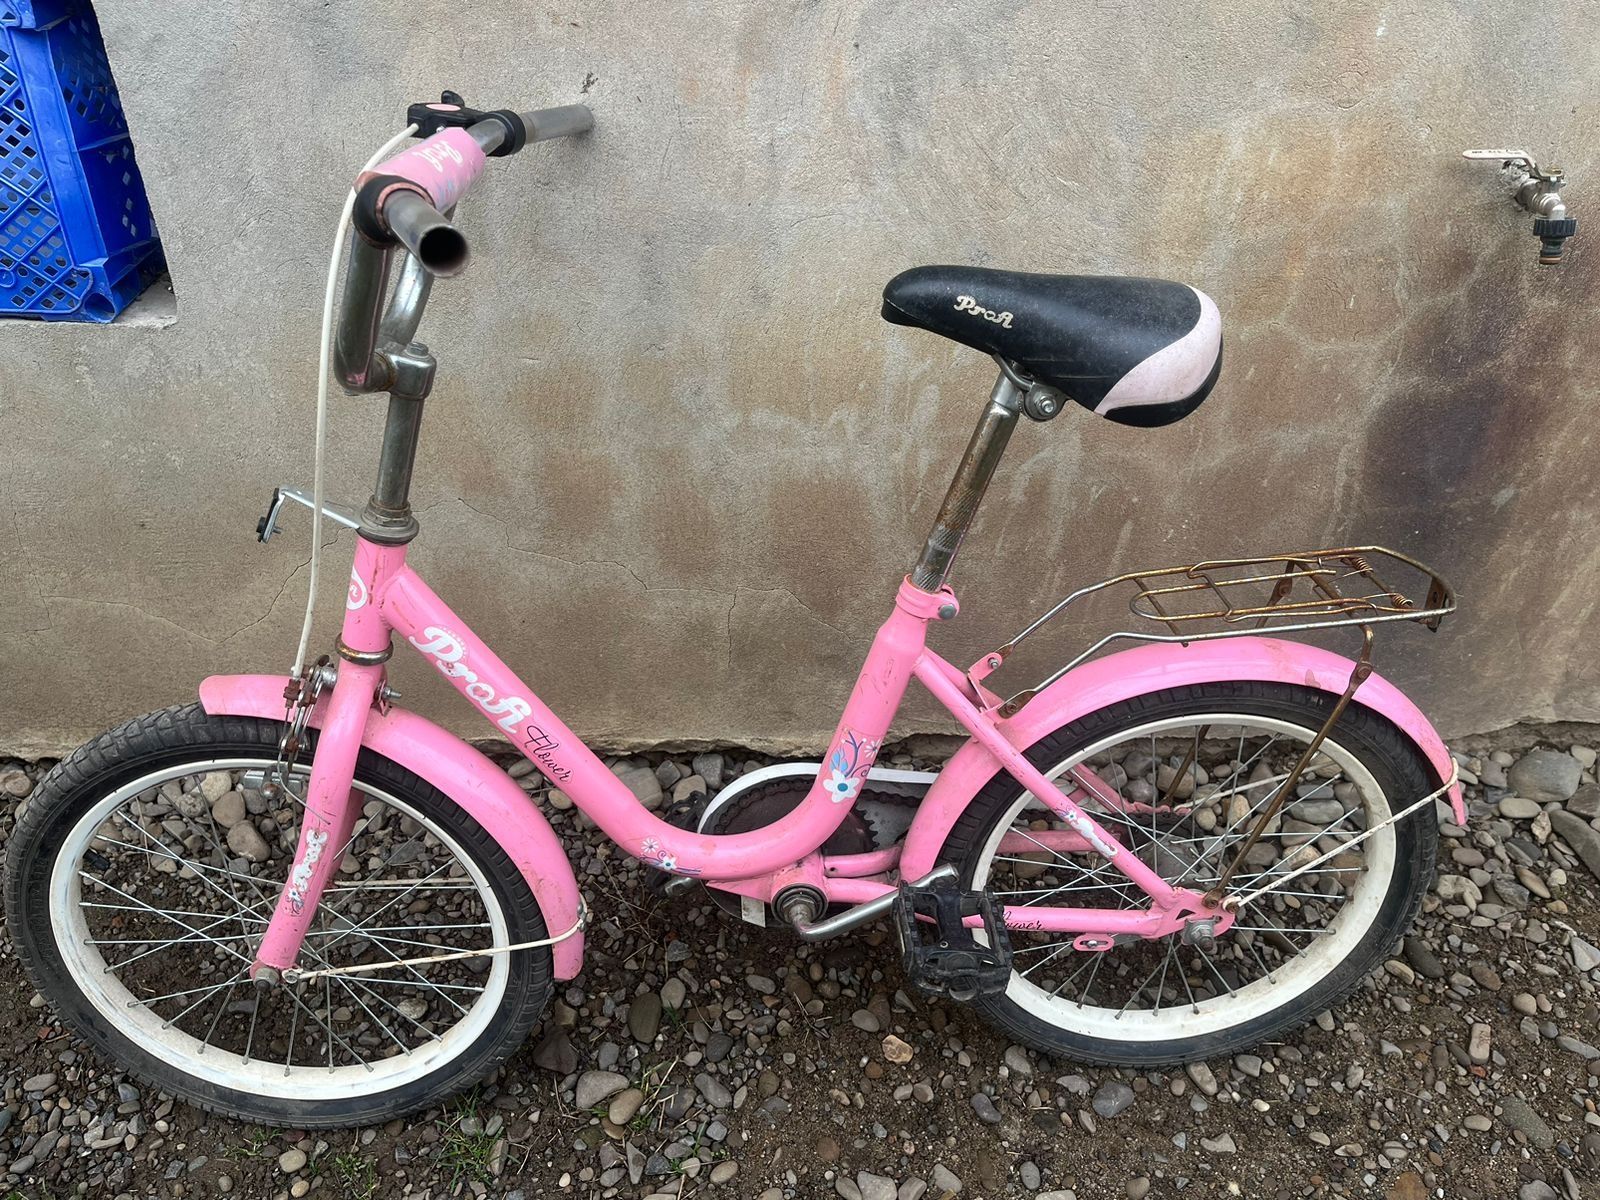 велосипед для дівчинки